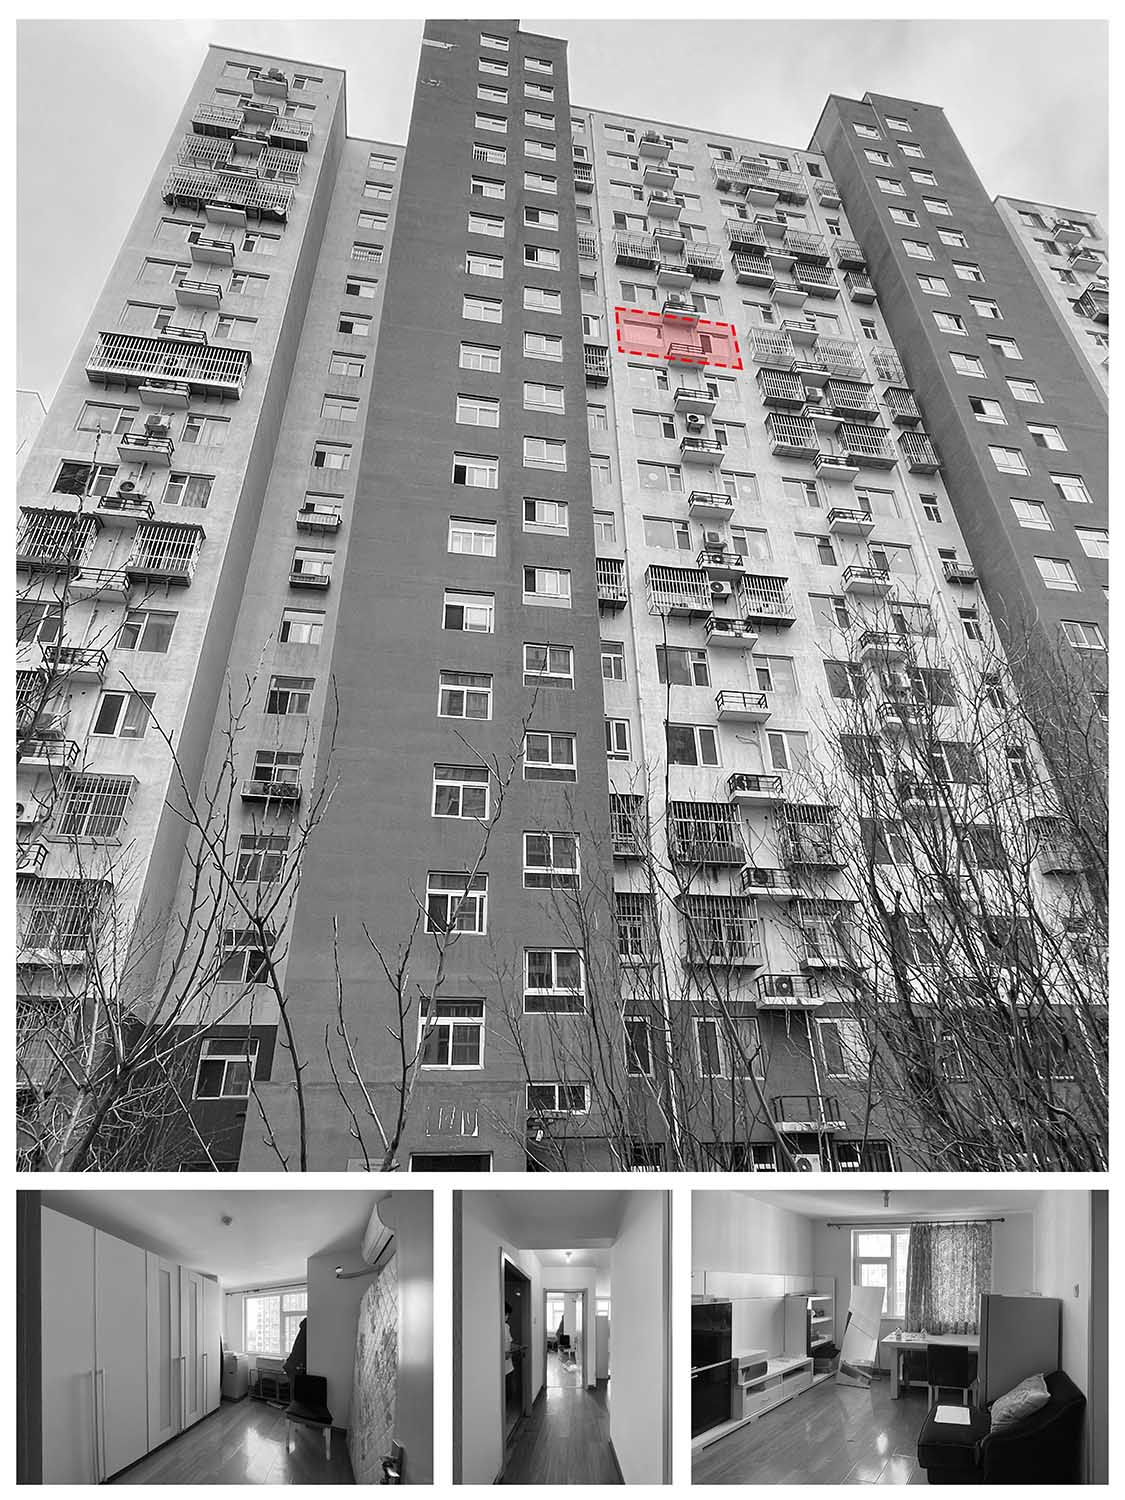 60㎡住宅設計,60㎡,小戶型設計,家裝設計,北京小戶型設計,北京住宅設計,小戶型設計案例,住宅設計案例,戲構建築,戲構建築設計,戲構建築設計公司